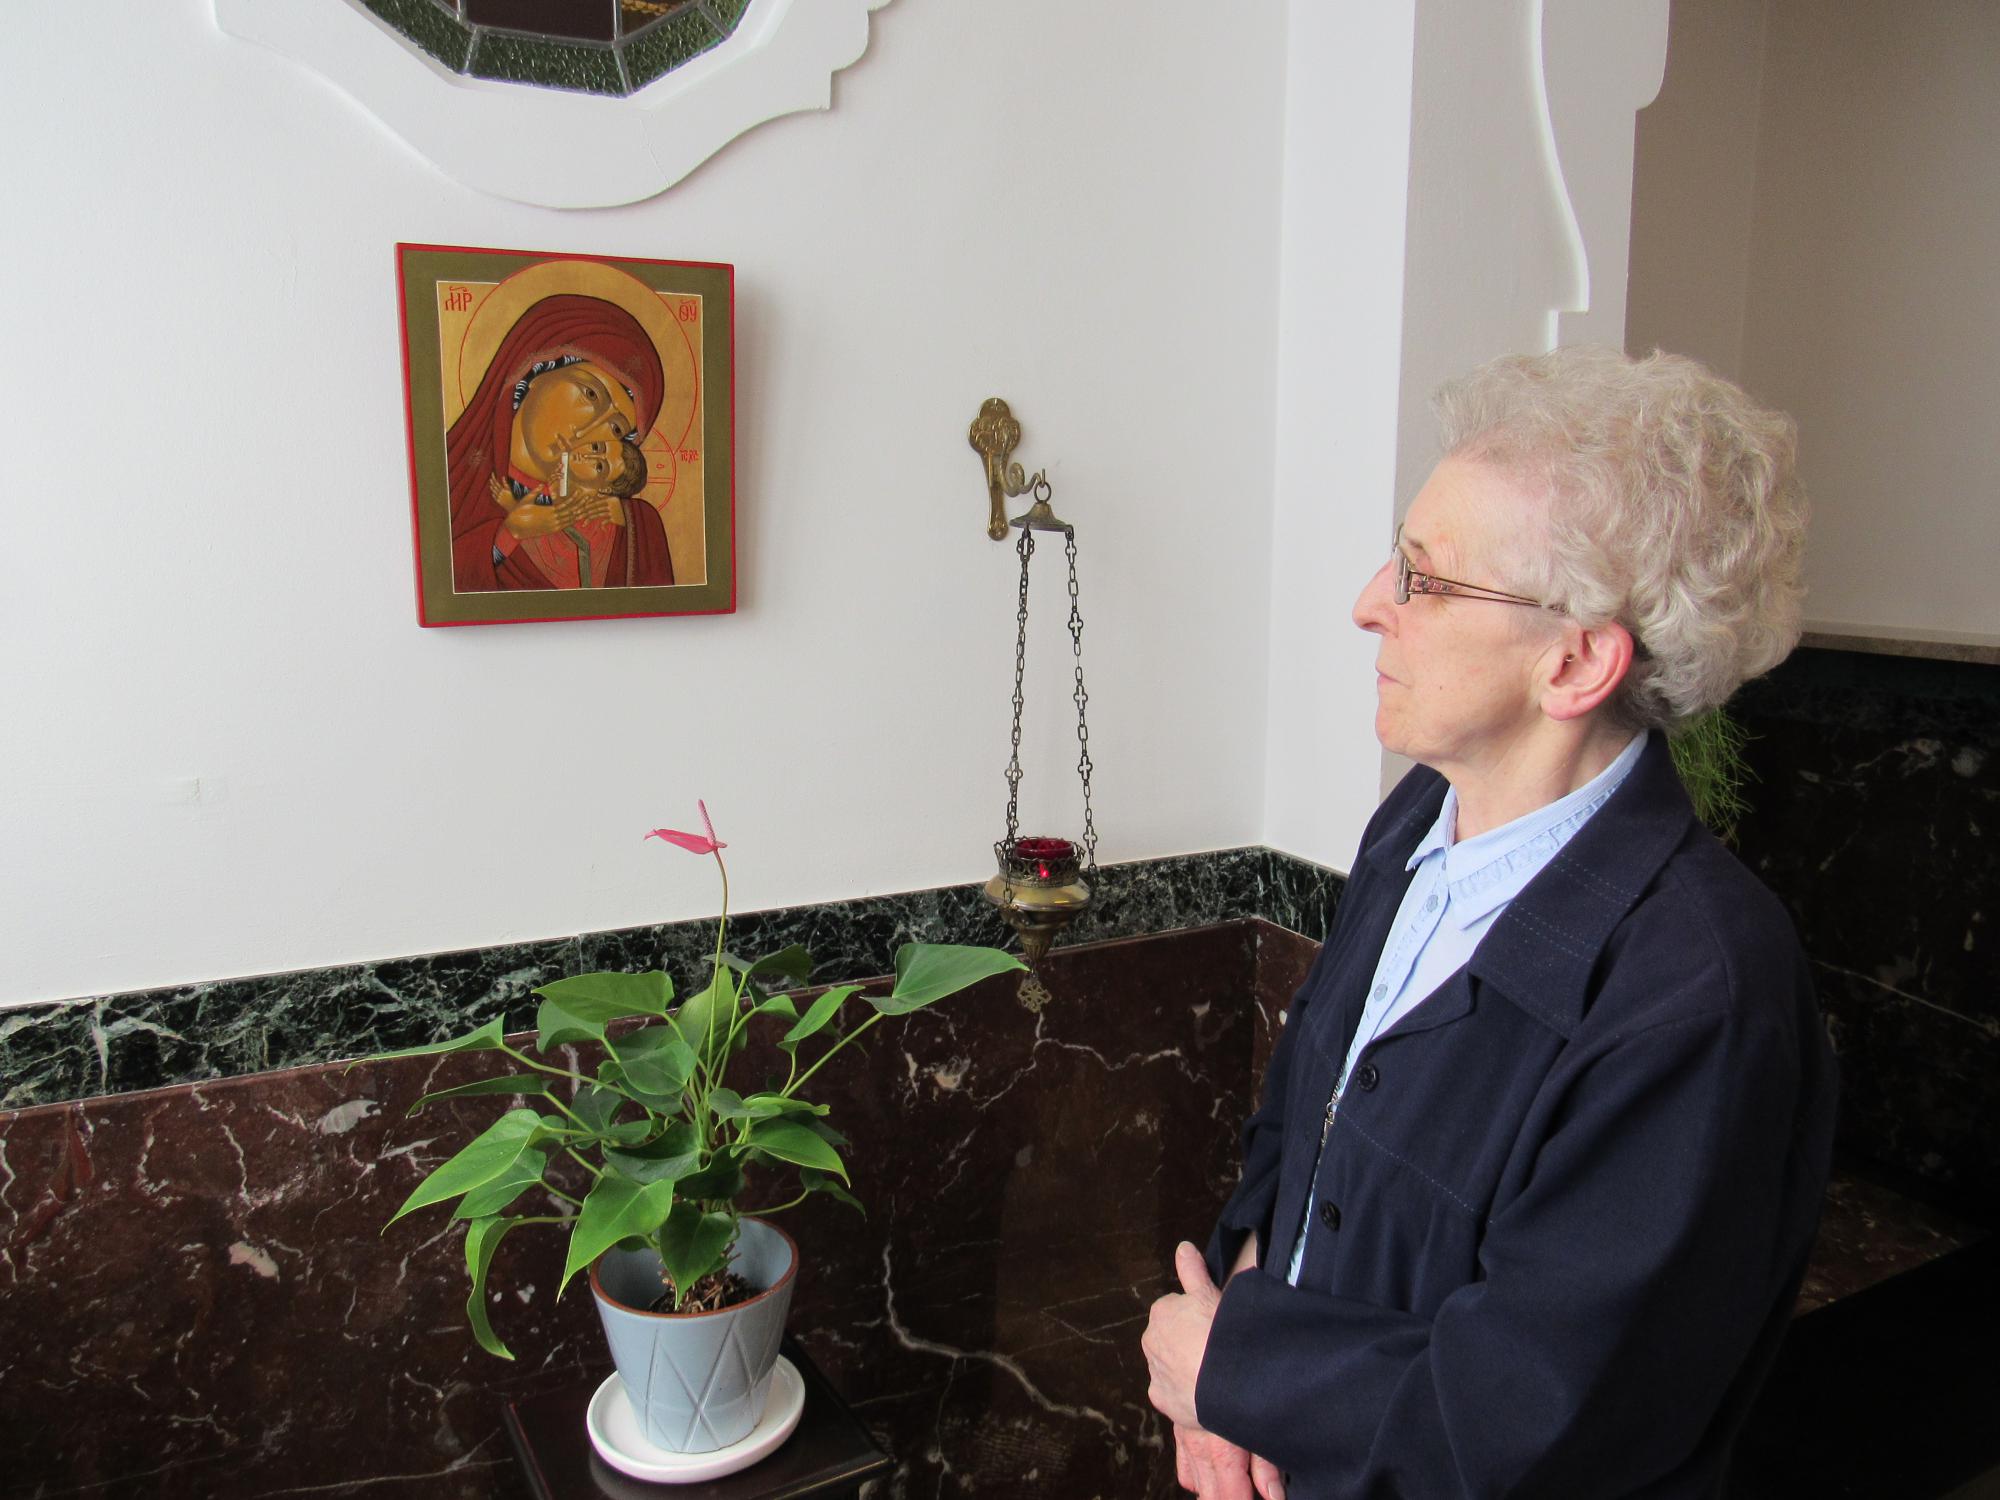 Zuster Joannicia leerde na haar pensioen als diensthoofd in een psychiatrisch ziekenhuis iconen schilderen.